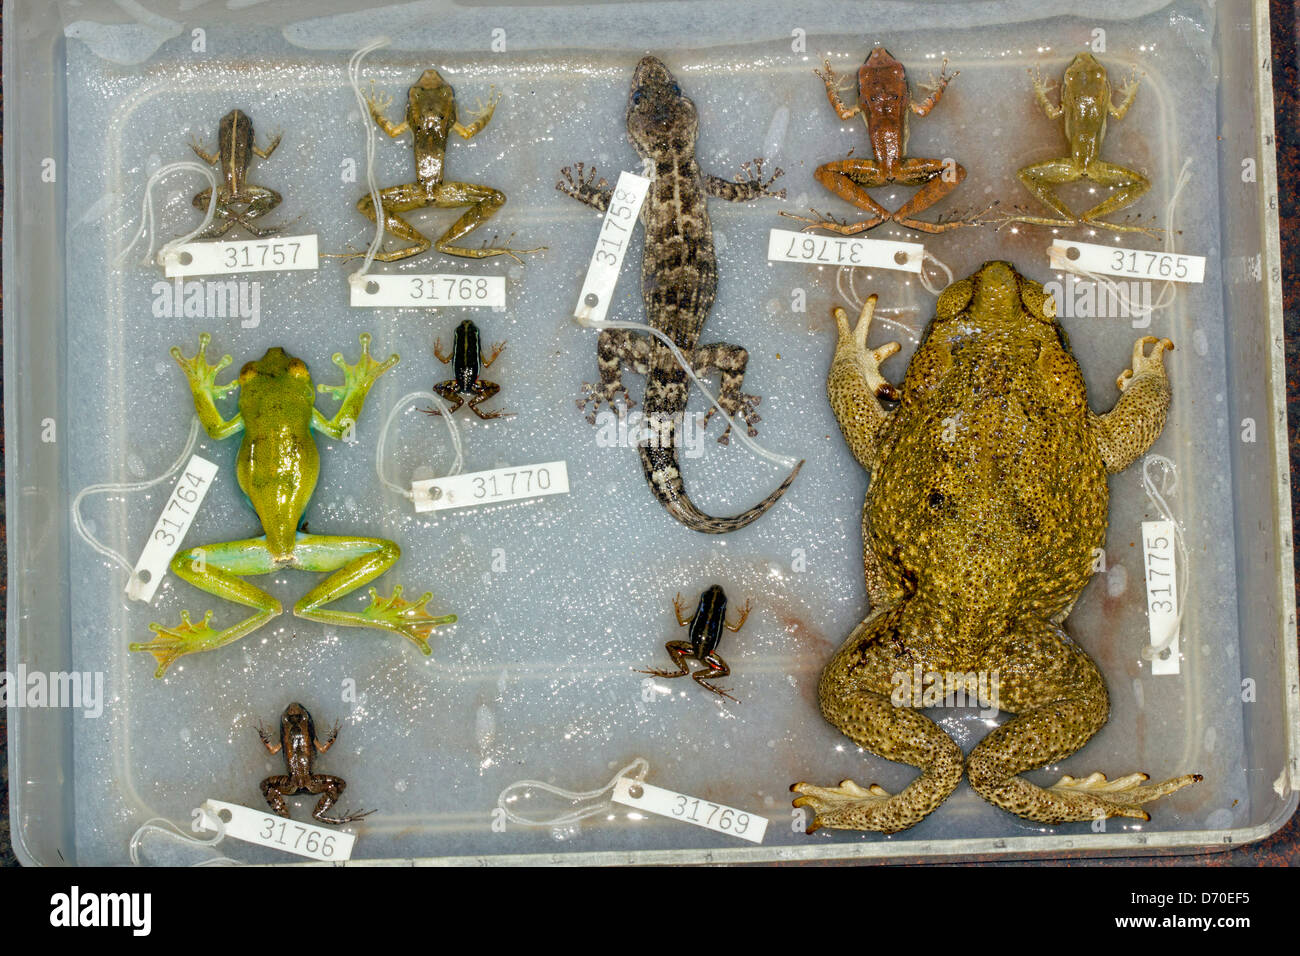 Exemplare von Reptilien und Amphibien mit Museum-Tags auf einer Erhebung Expedition in Ecuador in Formalin fixiert Stockfoto